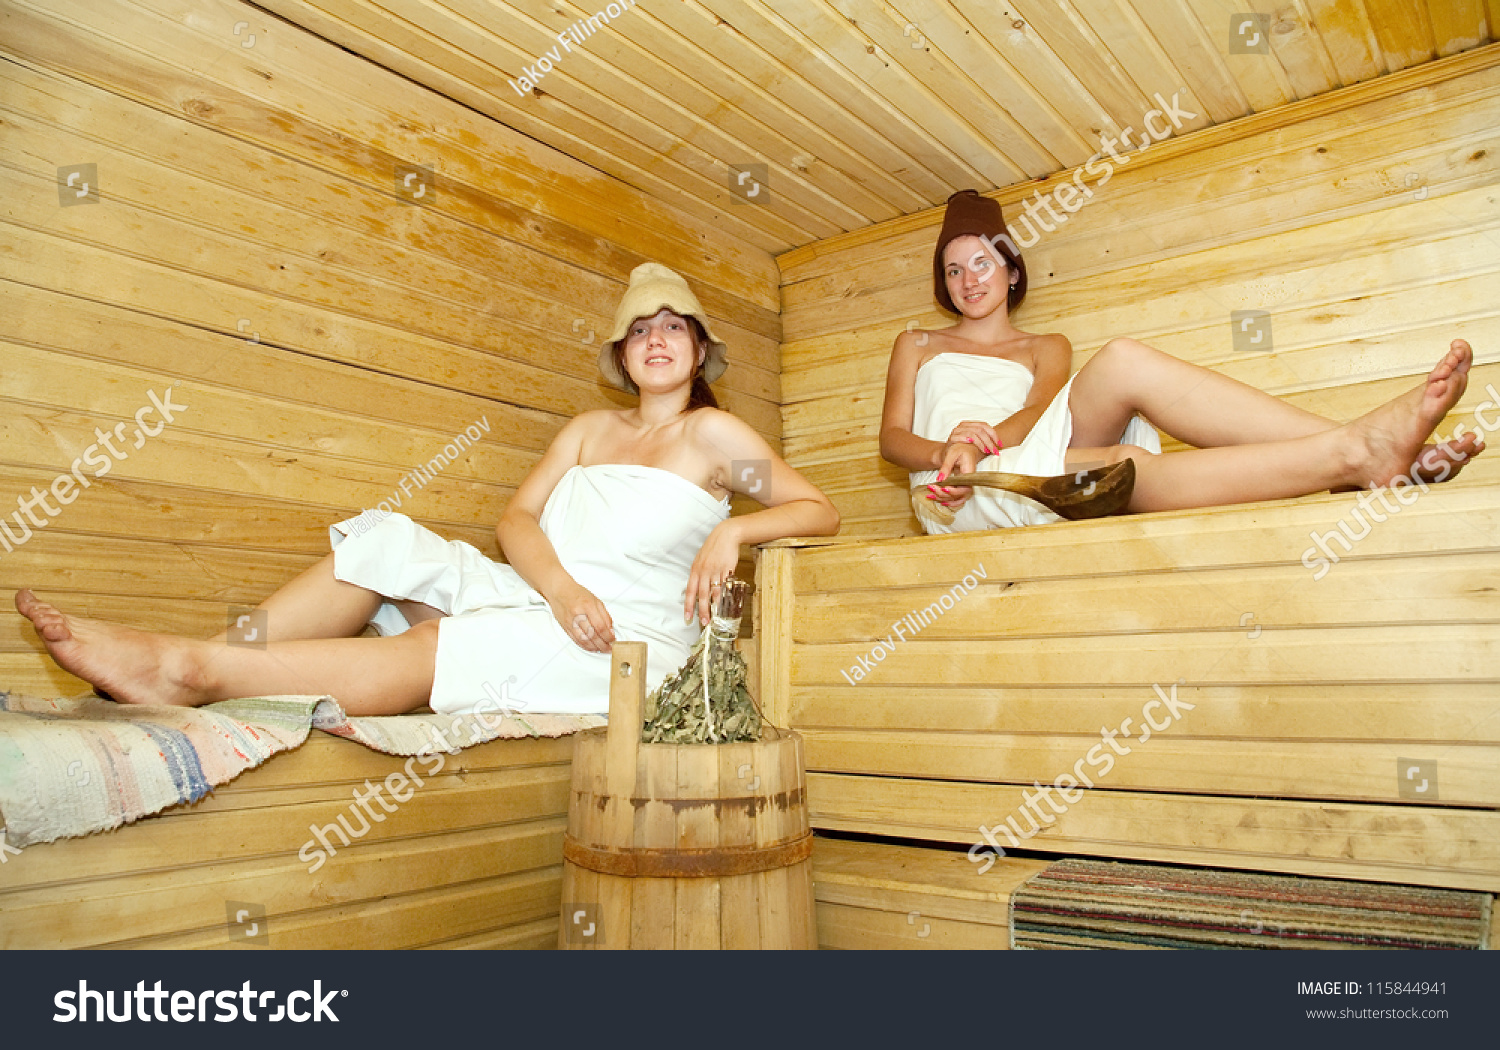 Русские жены в сауне видео. Две семейные пары в сауне. Девушки в сауне клипарты для фотошопа. Как девочки сидят в парной голыми.